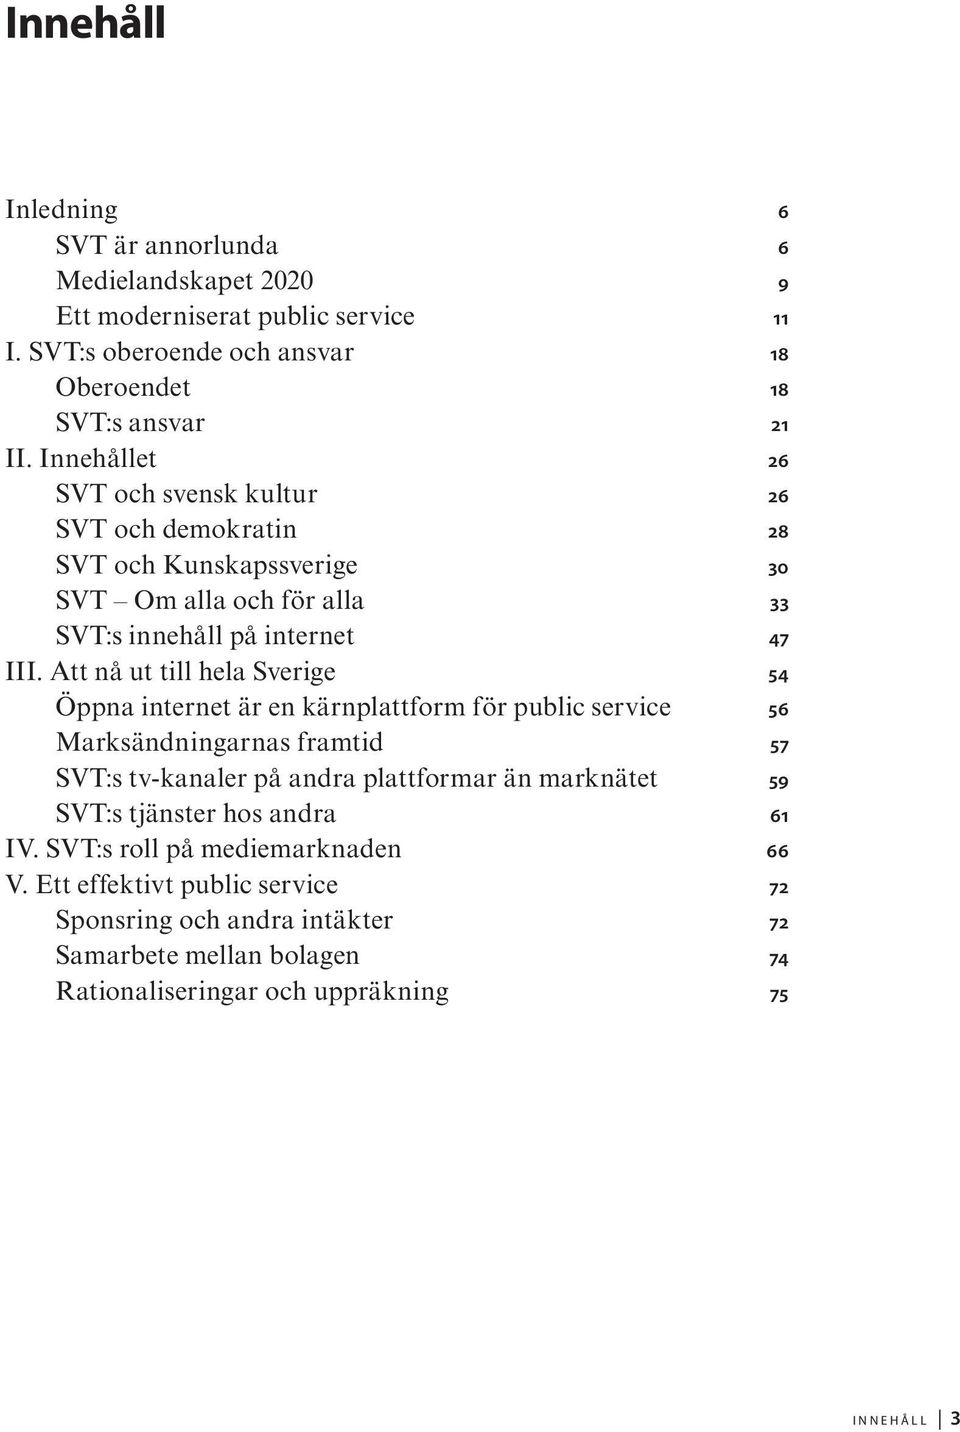 Att nå ut till hela Sverige 54 Öppna internet är en kärnplattform för public service 56 Marksändningarnas framtid 57 SVT:s tv-kanaler på andra plattformar än marknätet 59